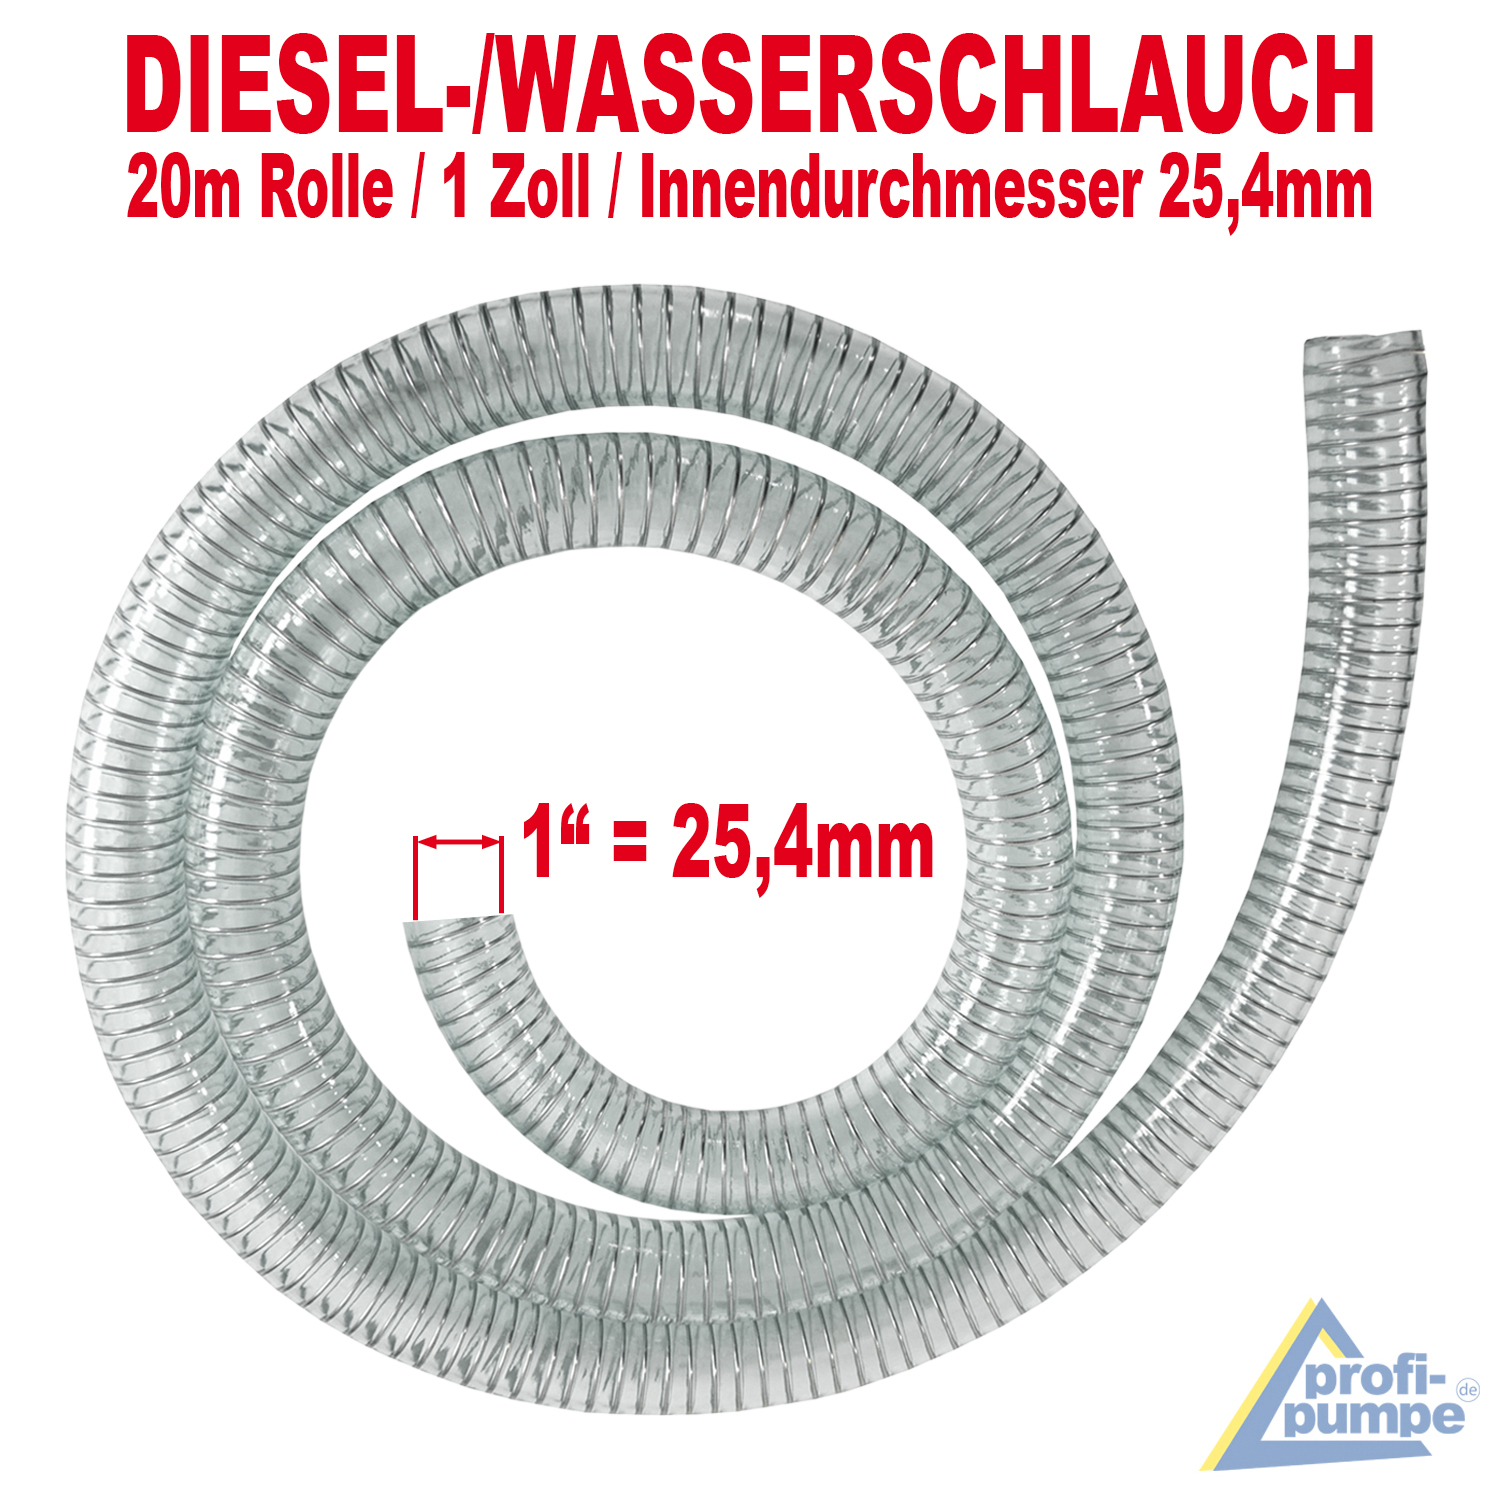 https://www.profi-pumpe.de/images/product_images/original_images/A5150_Diesel-Spiralschlauch_20mm_1Zoll_20m.jpg